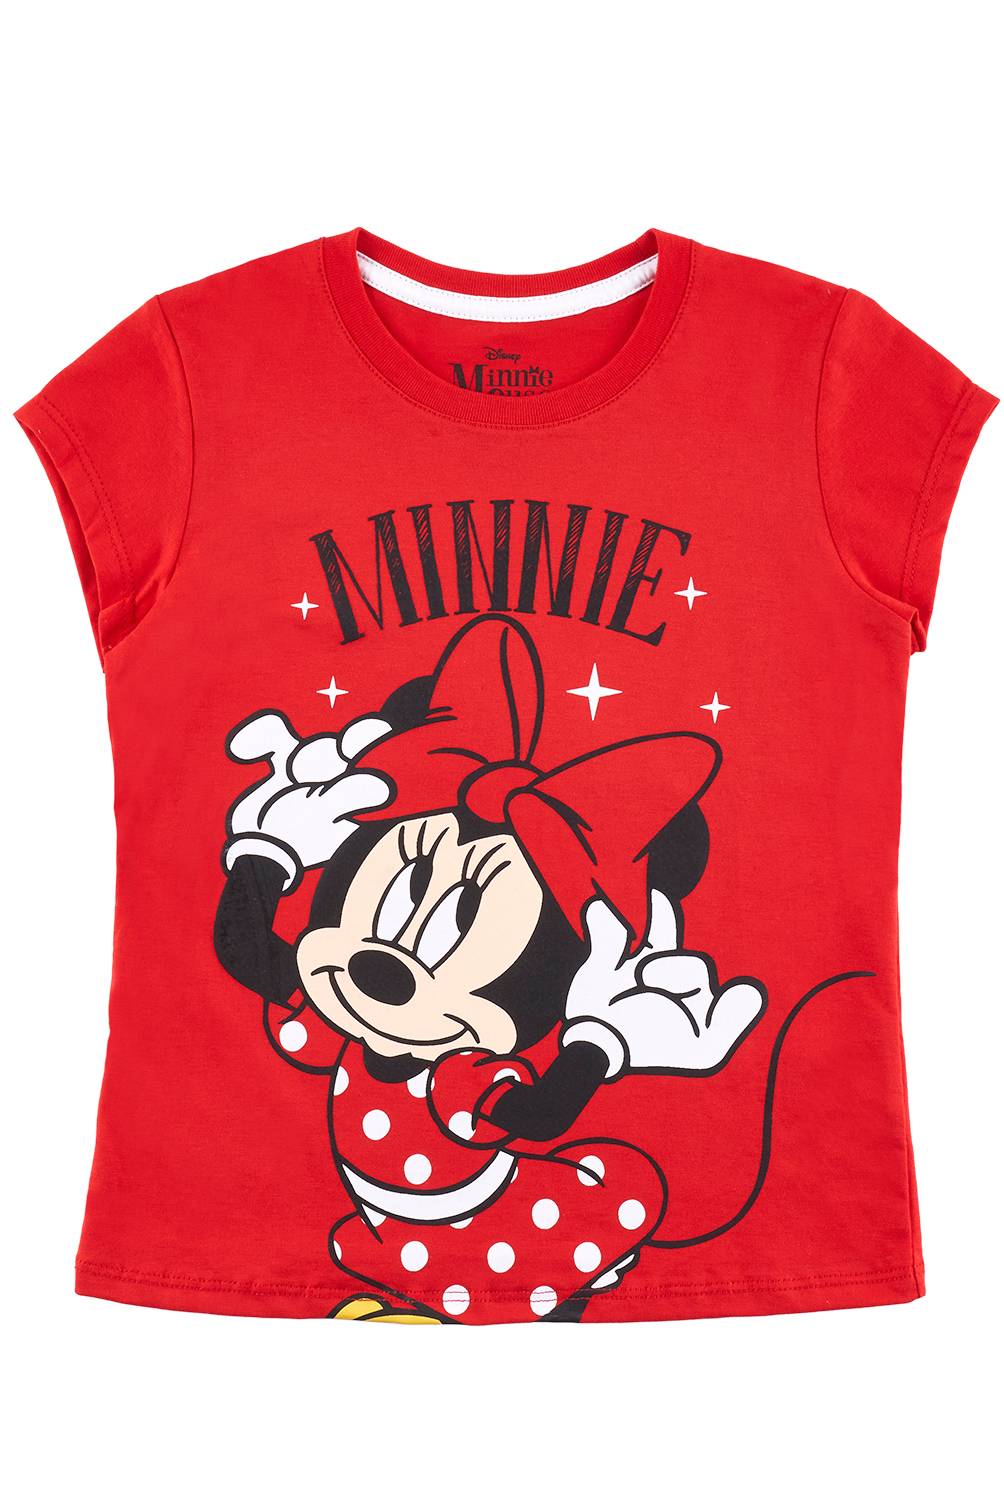 Camiseta Minnie niña manga corta roja